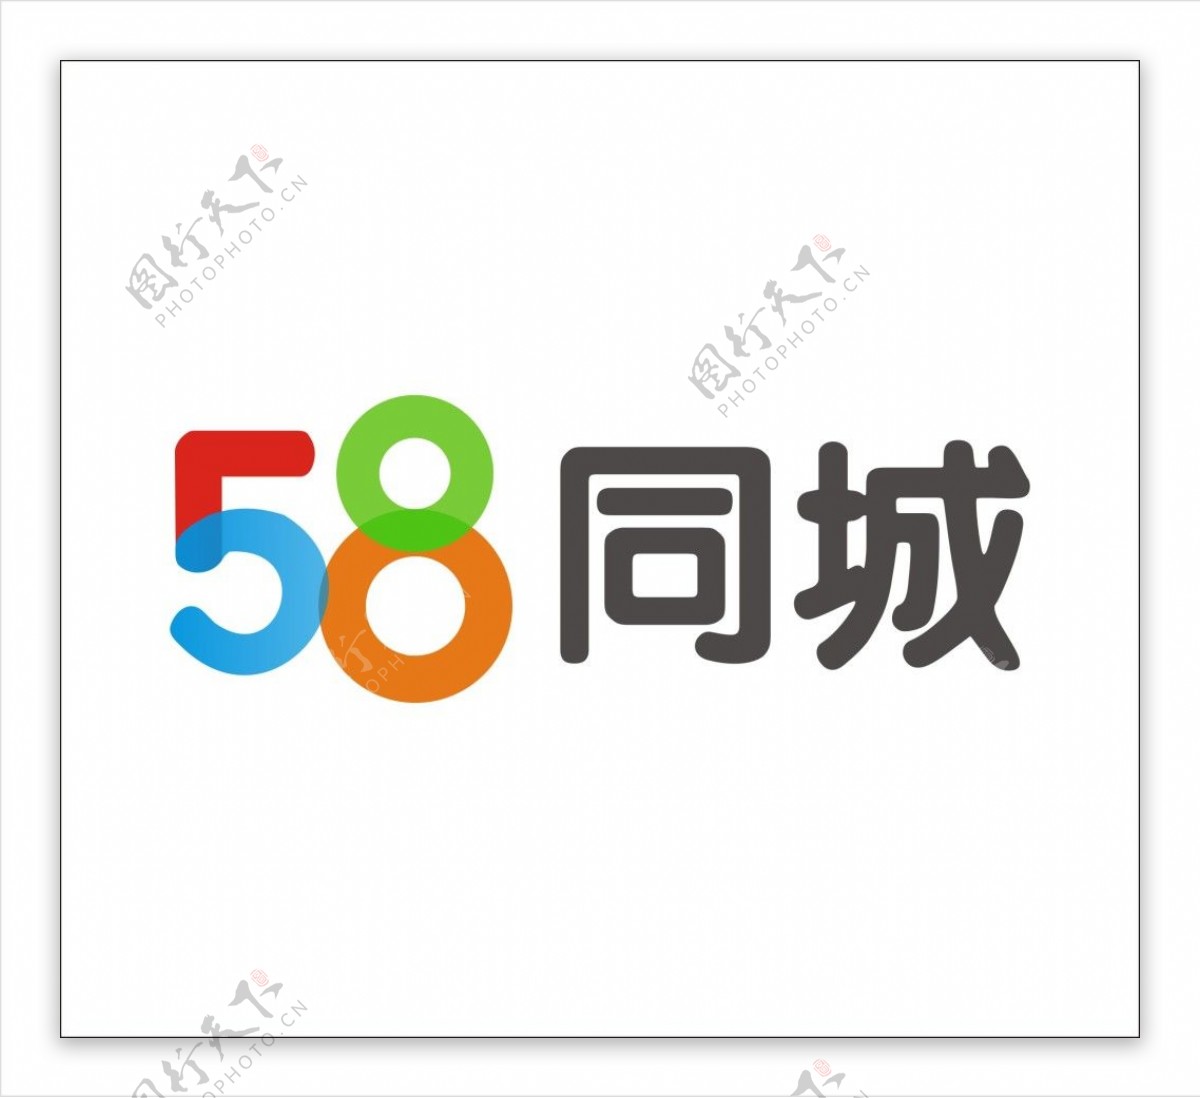 58同城新logo